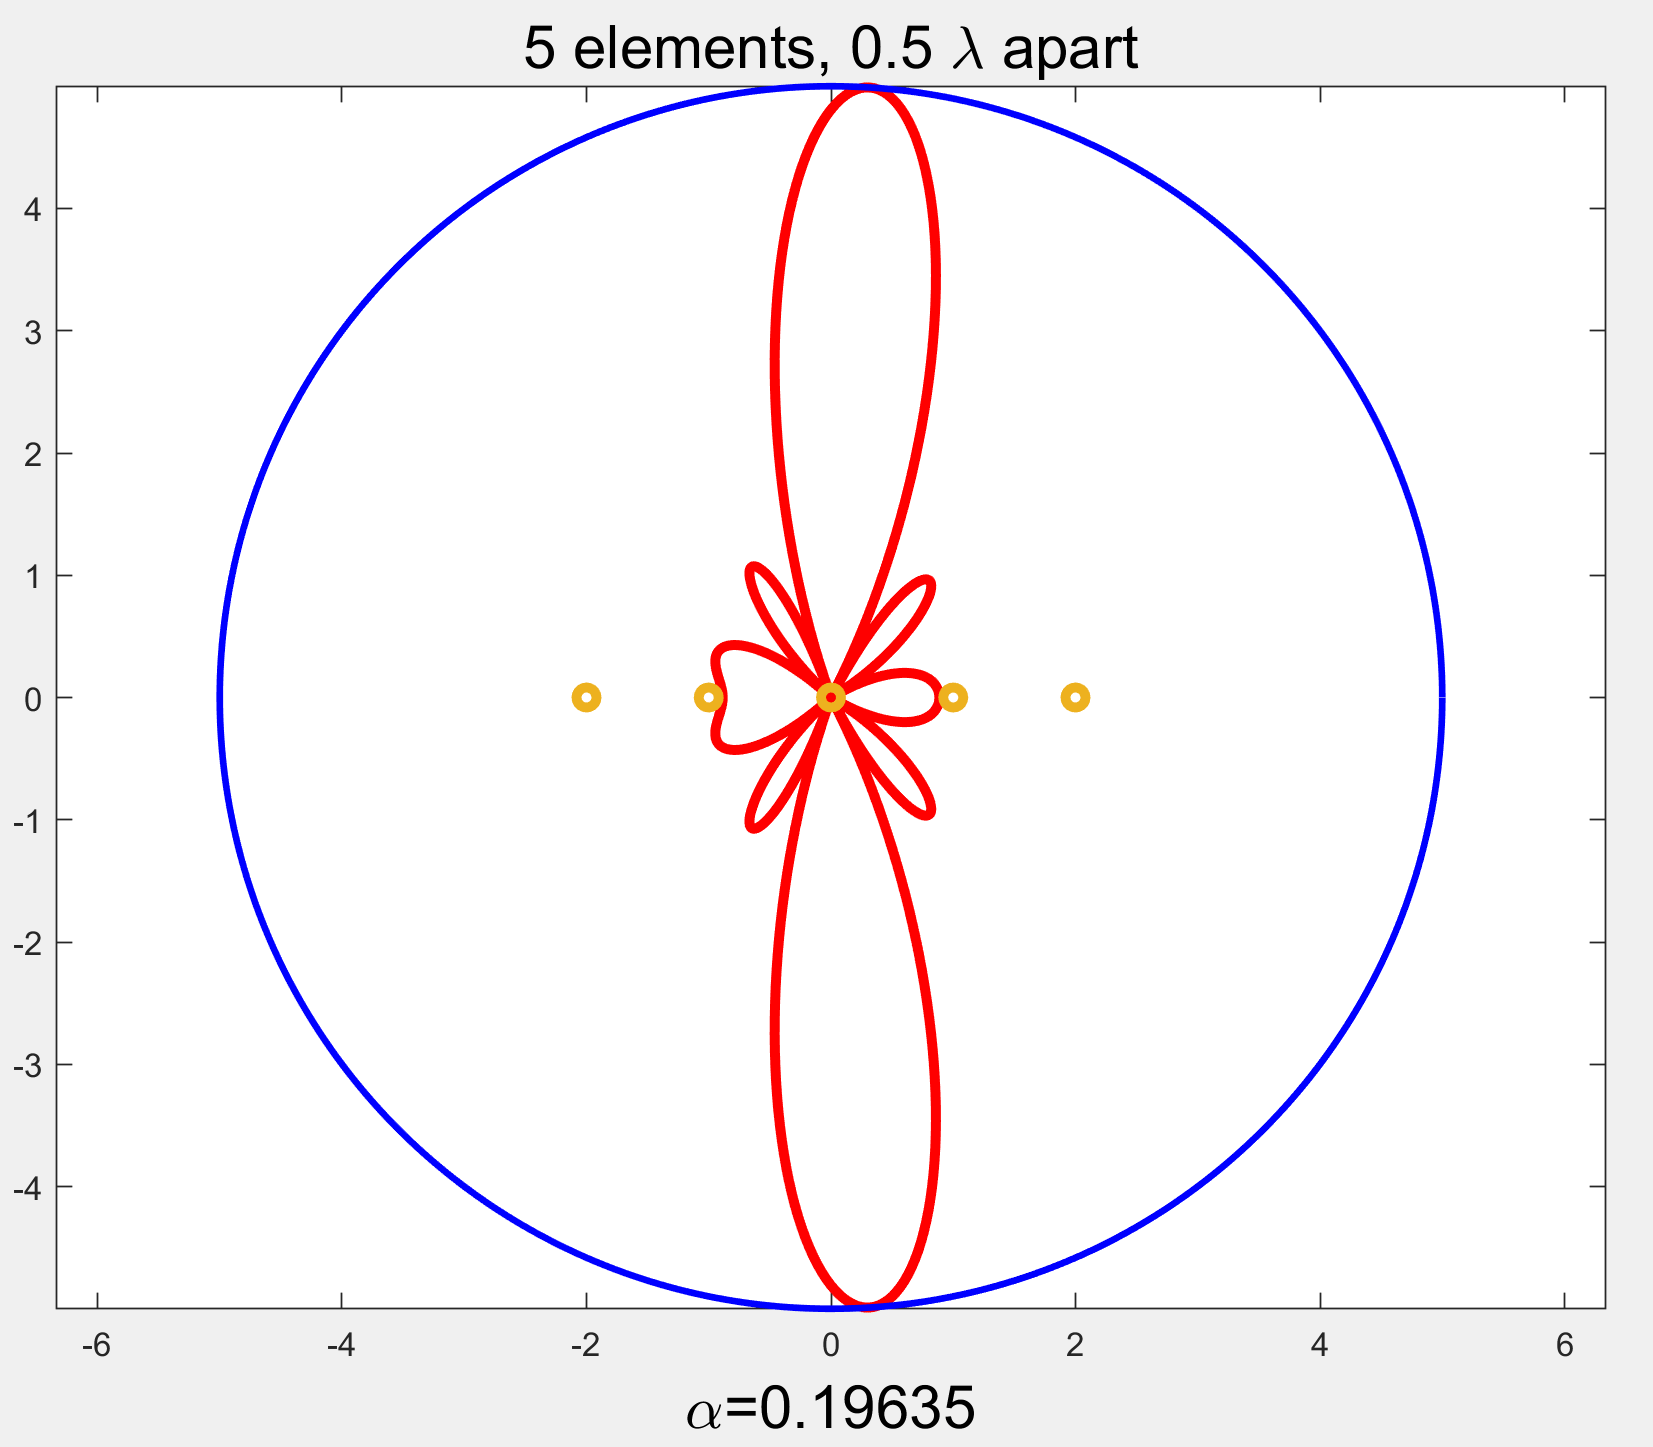 偶极子阵列方向图（随阵元数目、激励相位差变化观察） 内容：  观察并讨论阵元数目对主副瓣的影响、方向